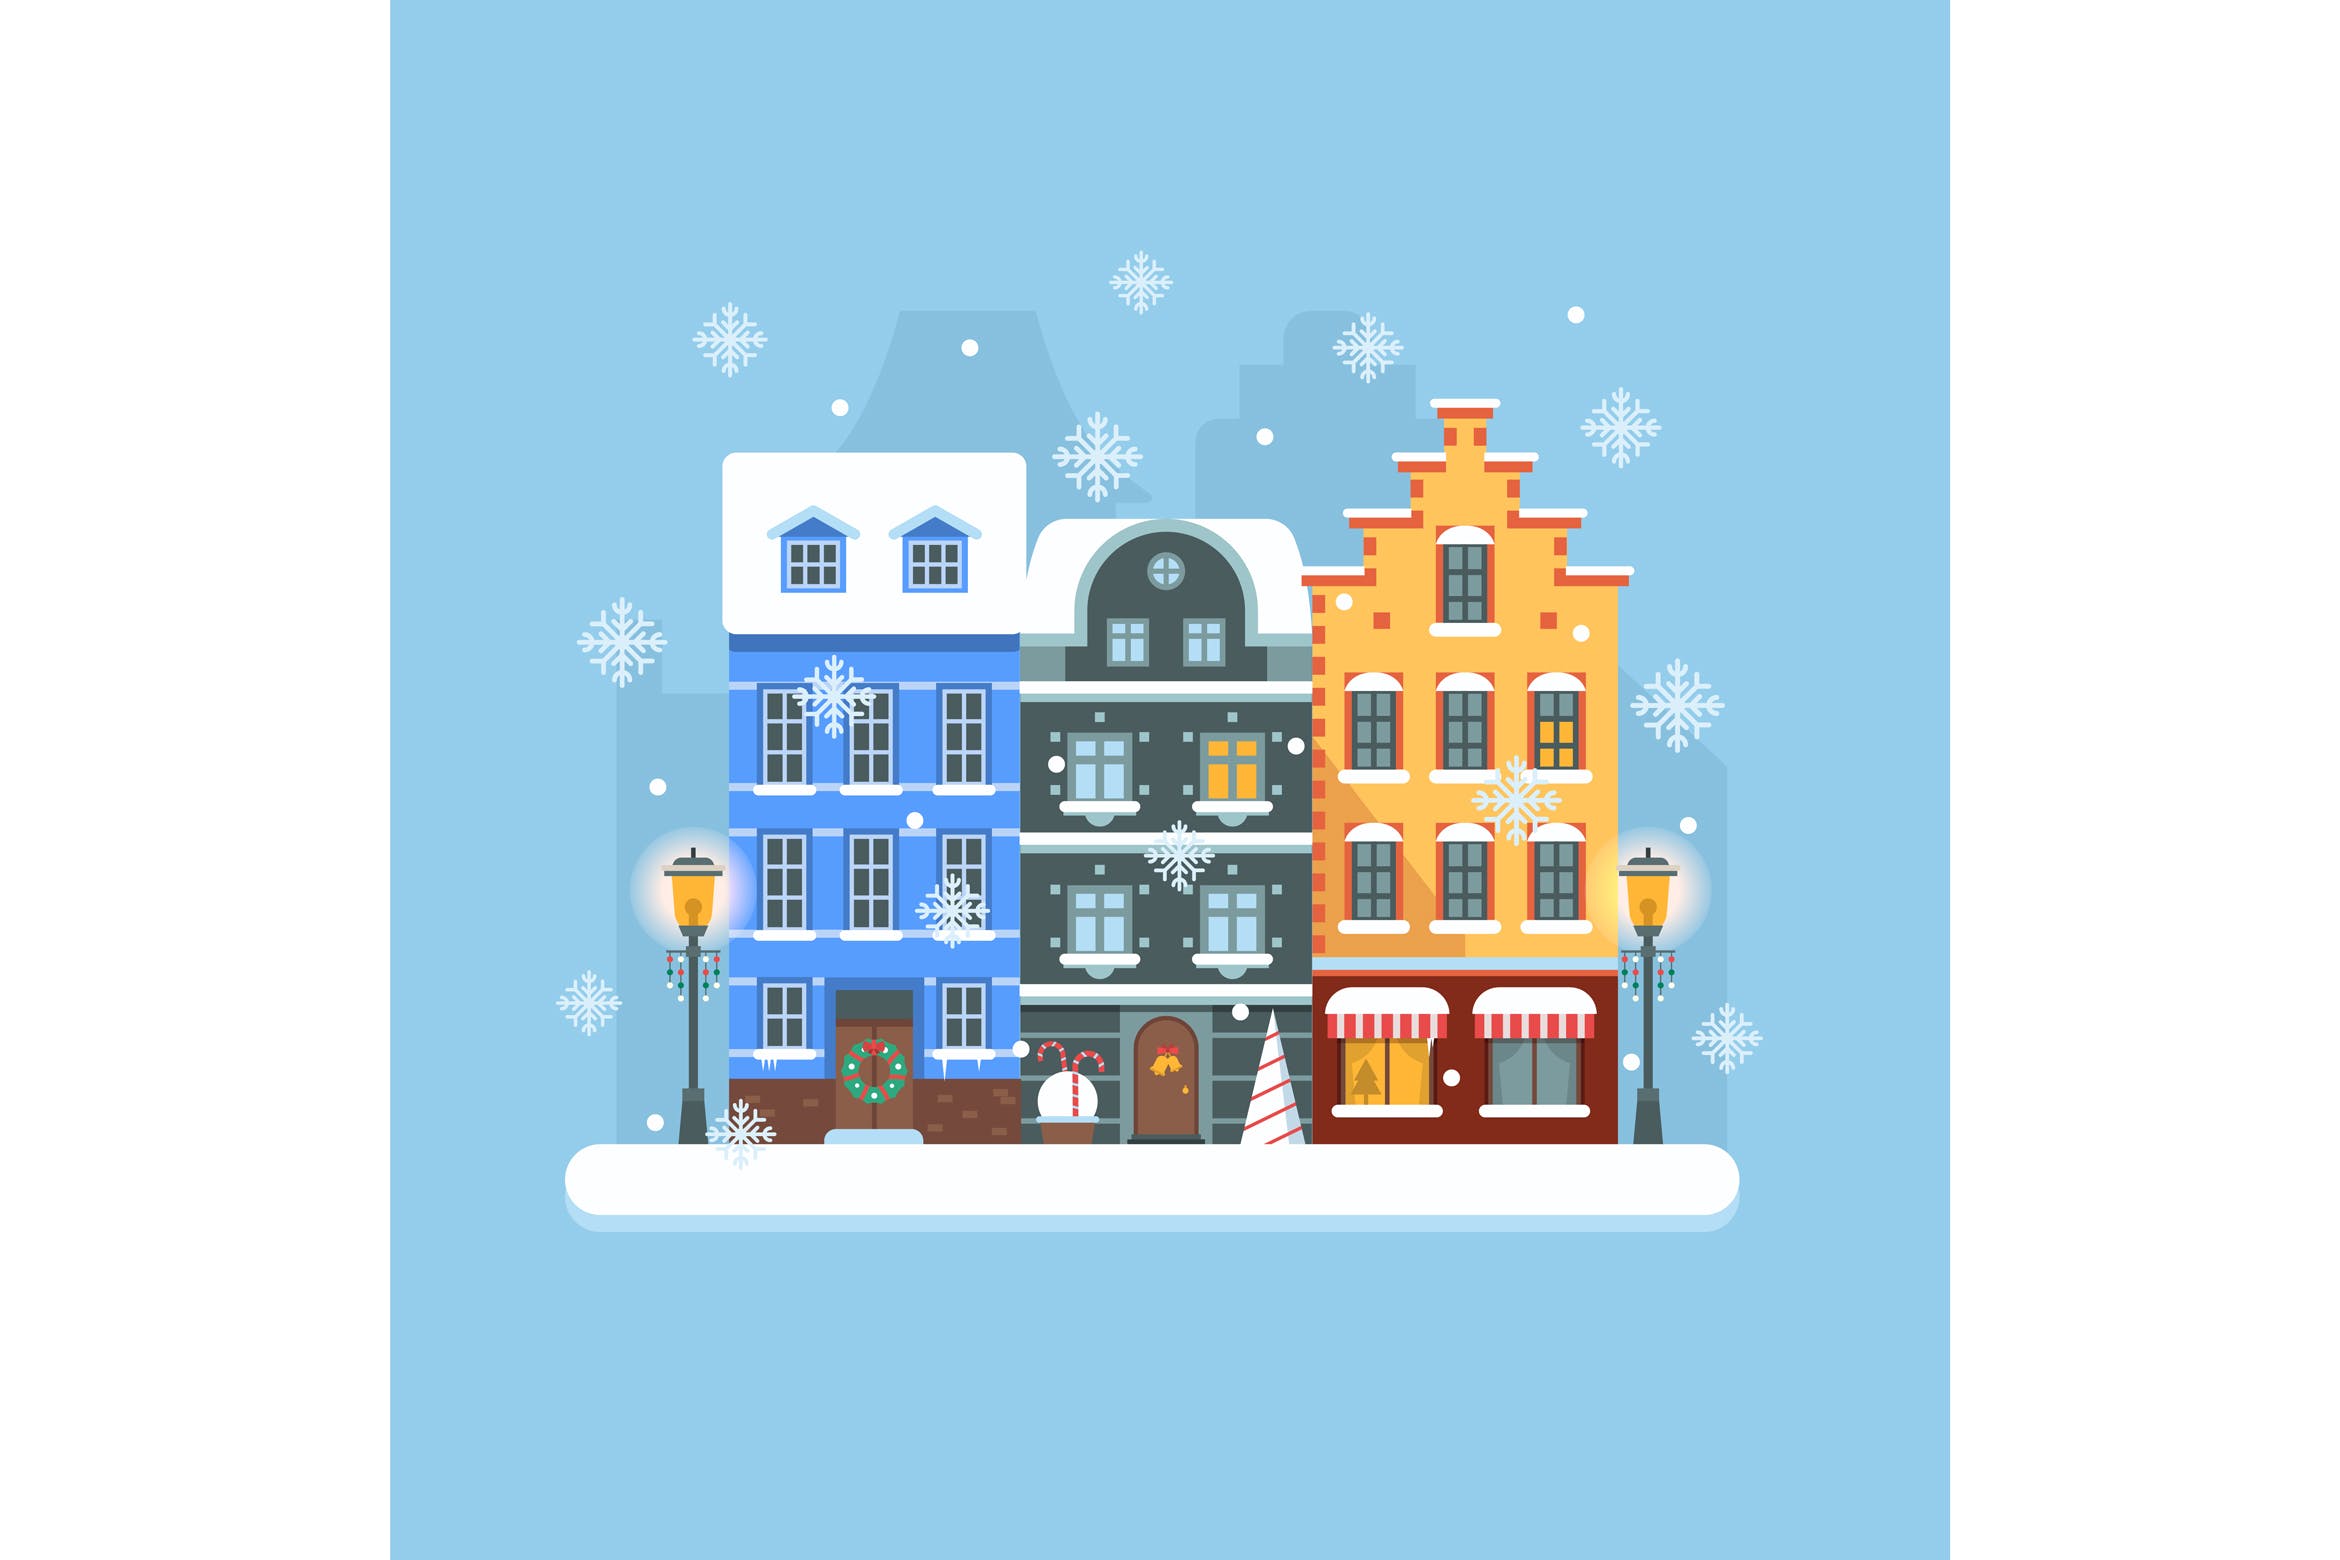 欧洲圣诞节小镇矢量插画素材 Europe Christmas Snow Town Street插图